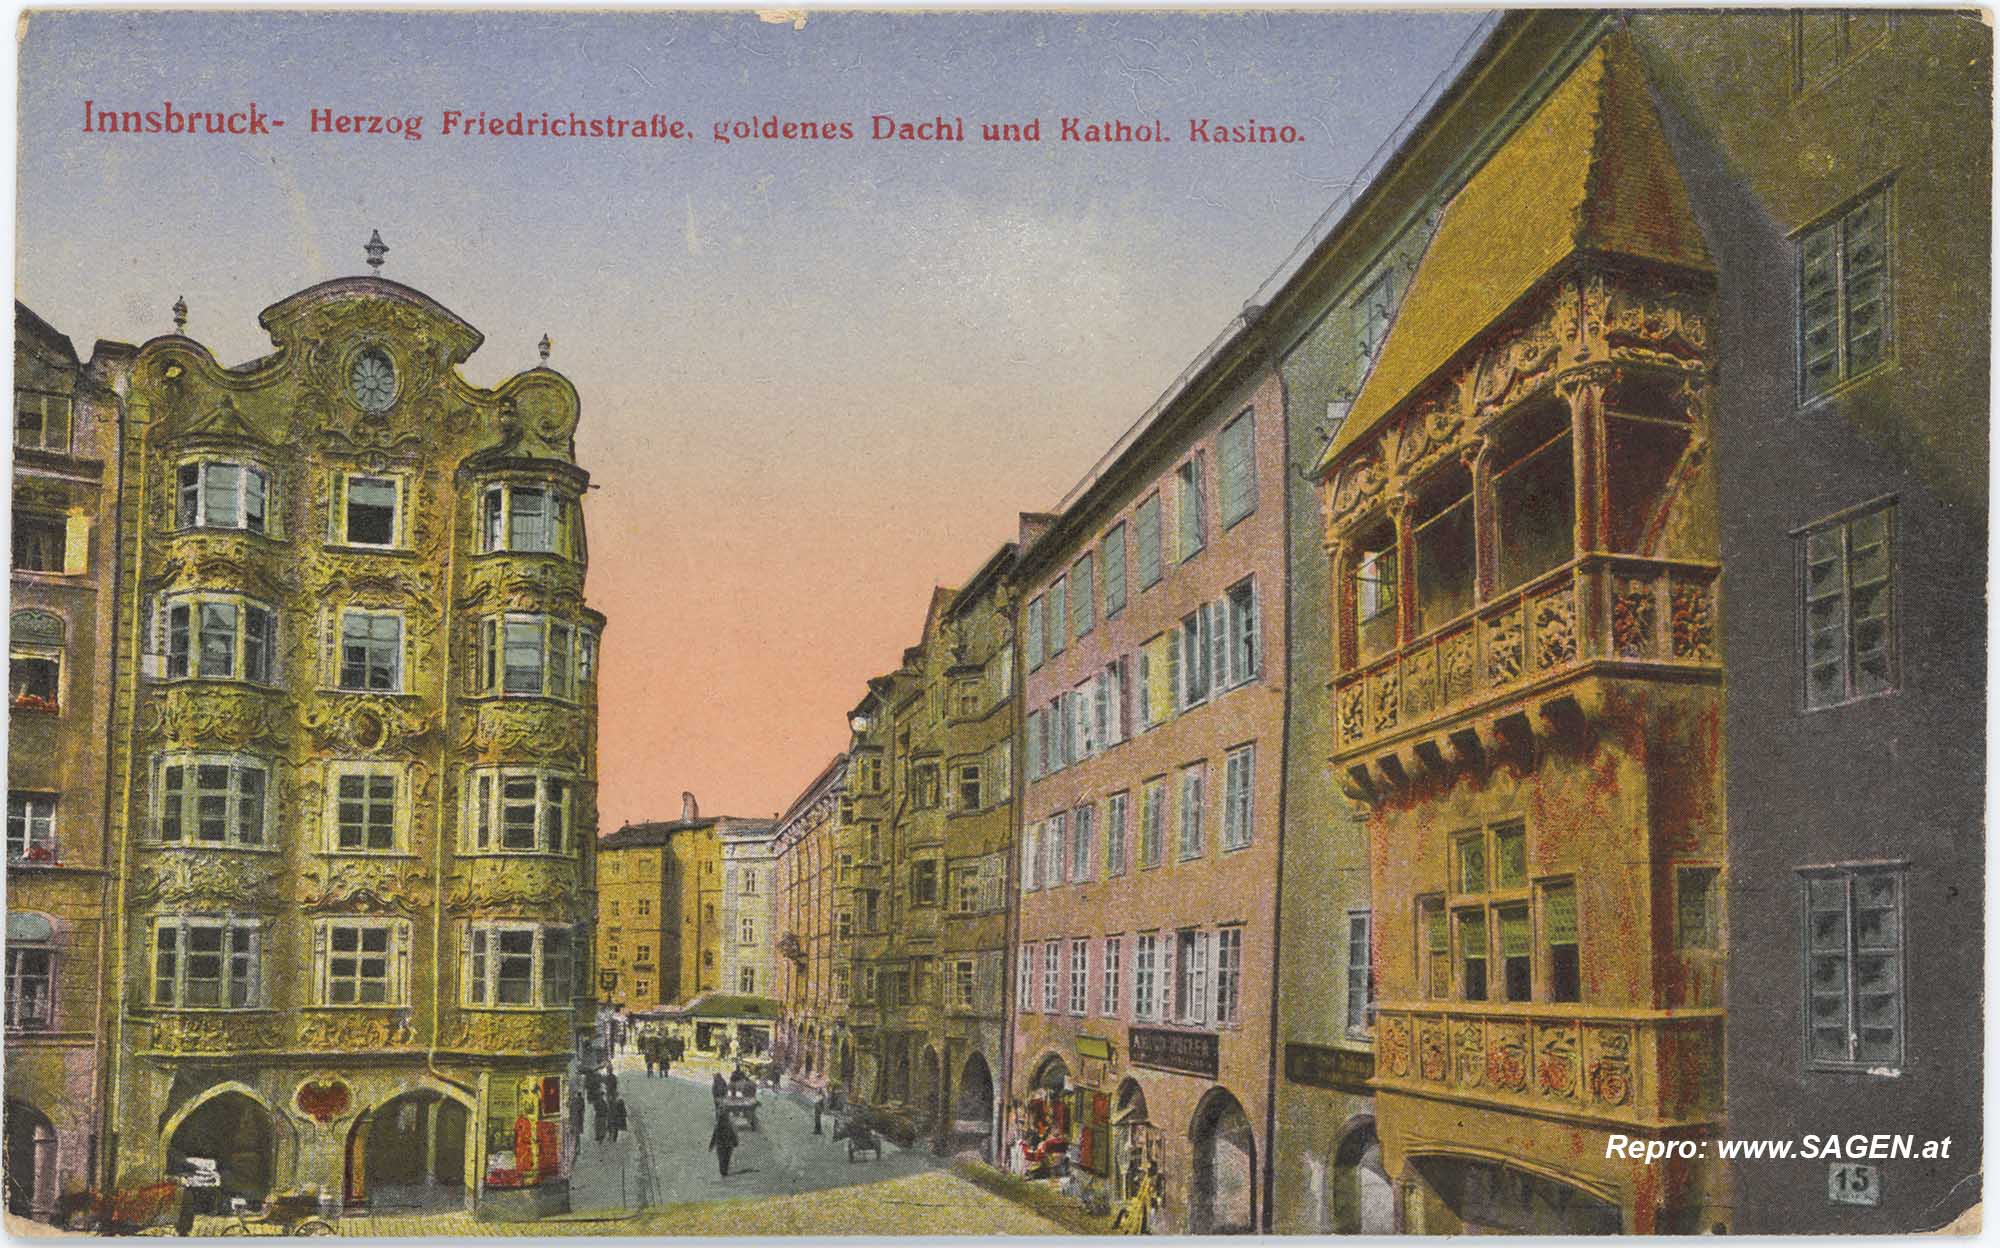 Innsbruck - Herzog Friedrichstraße, goldenes Dachl und Kathol. Kasino